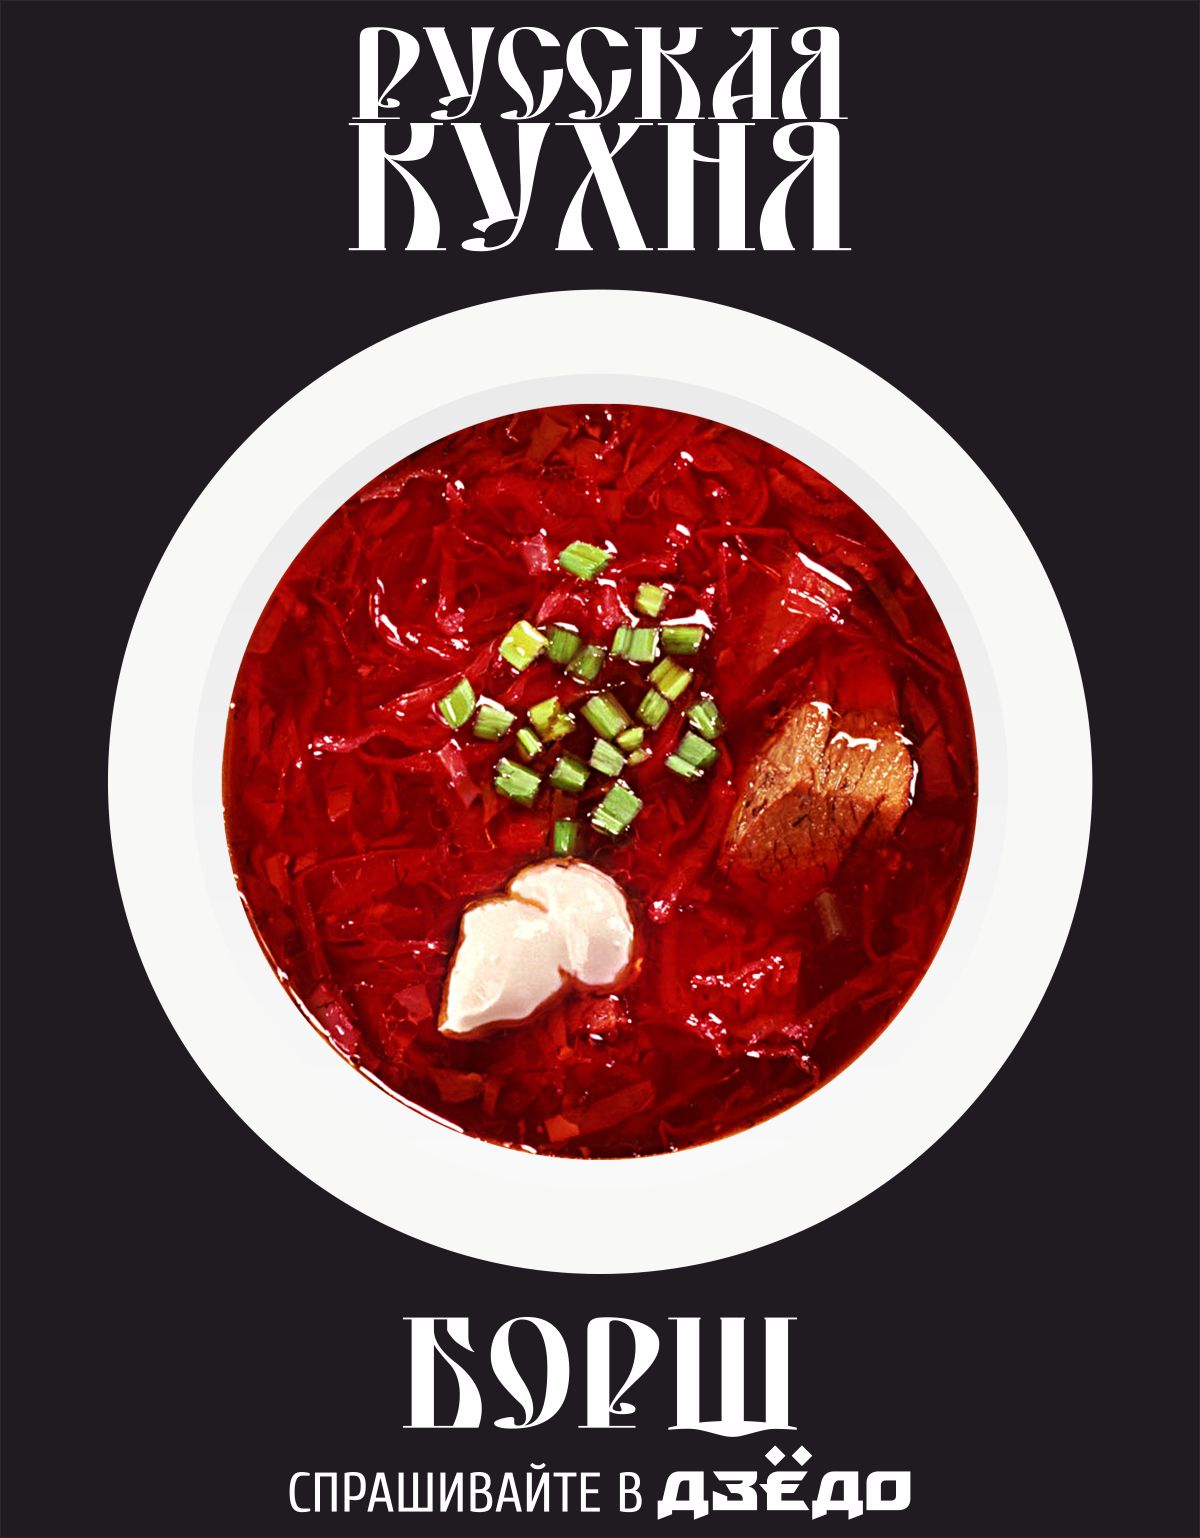 меню кафе русской кухни